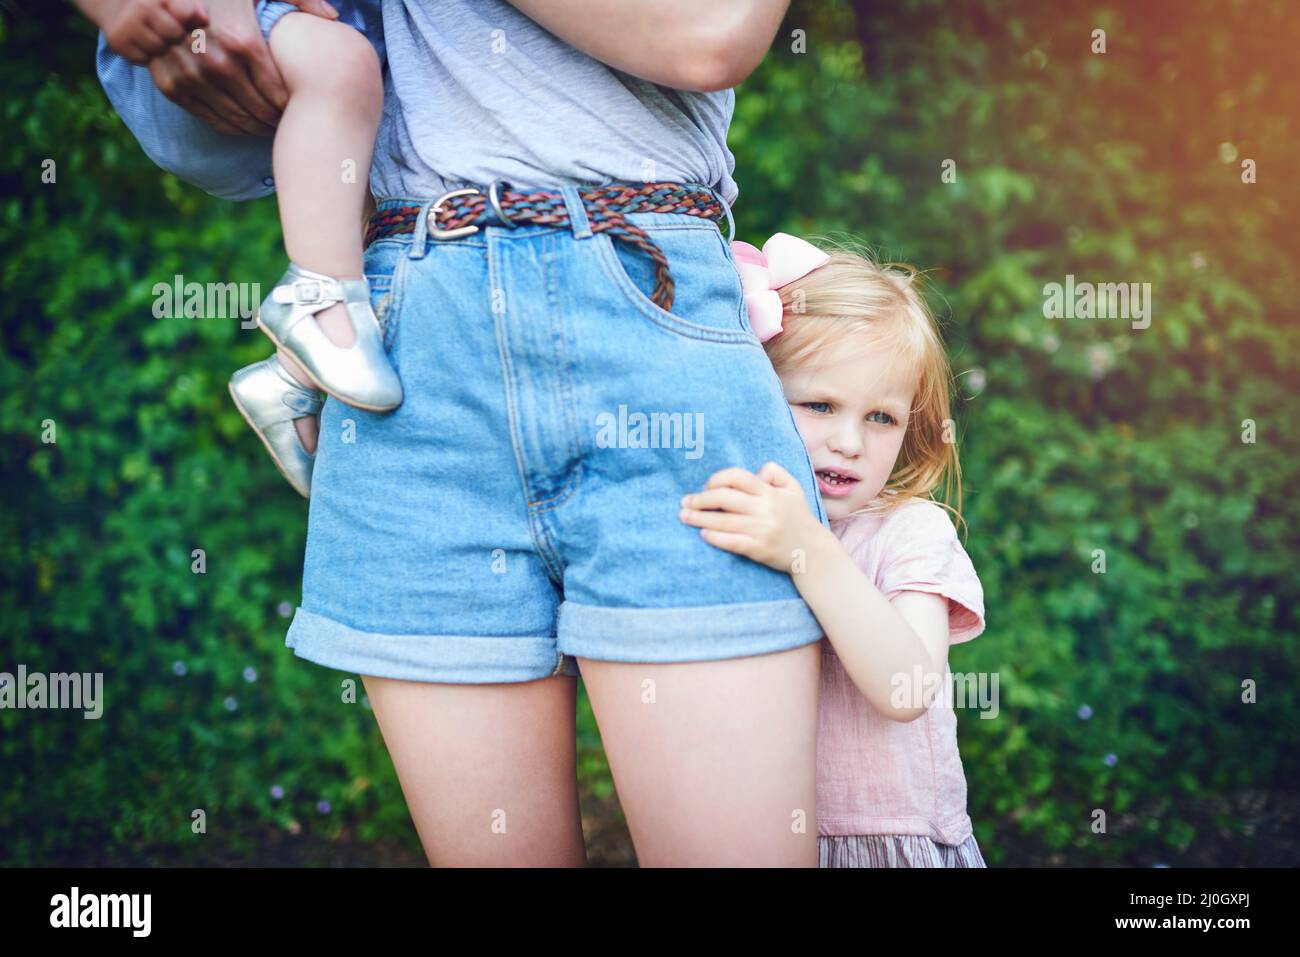 Probleme beim Loslassen. Aufnahme eines kleinen Mädchens, das während eines Tages im Freien an ihrer Mutter festhält. Stockfoto